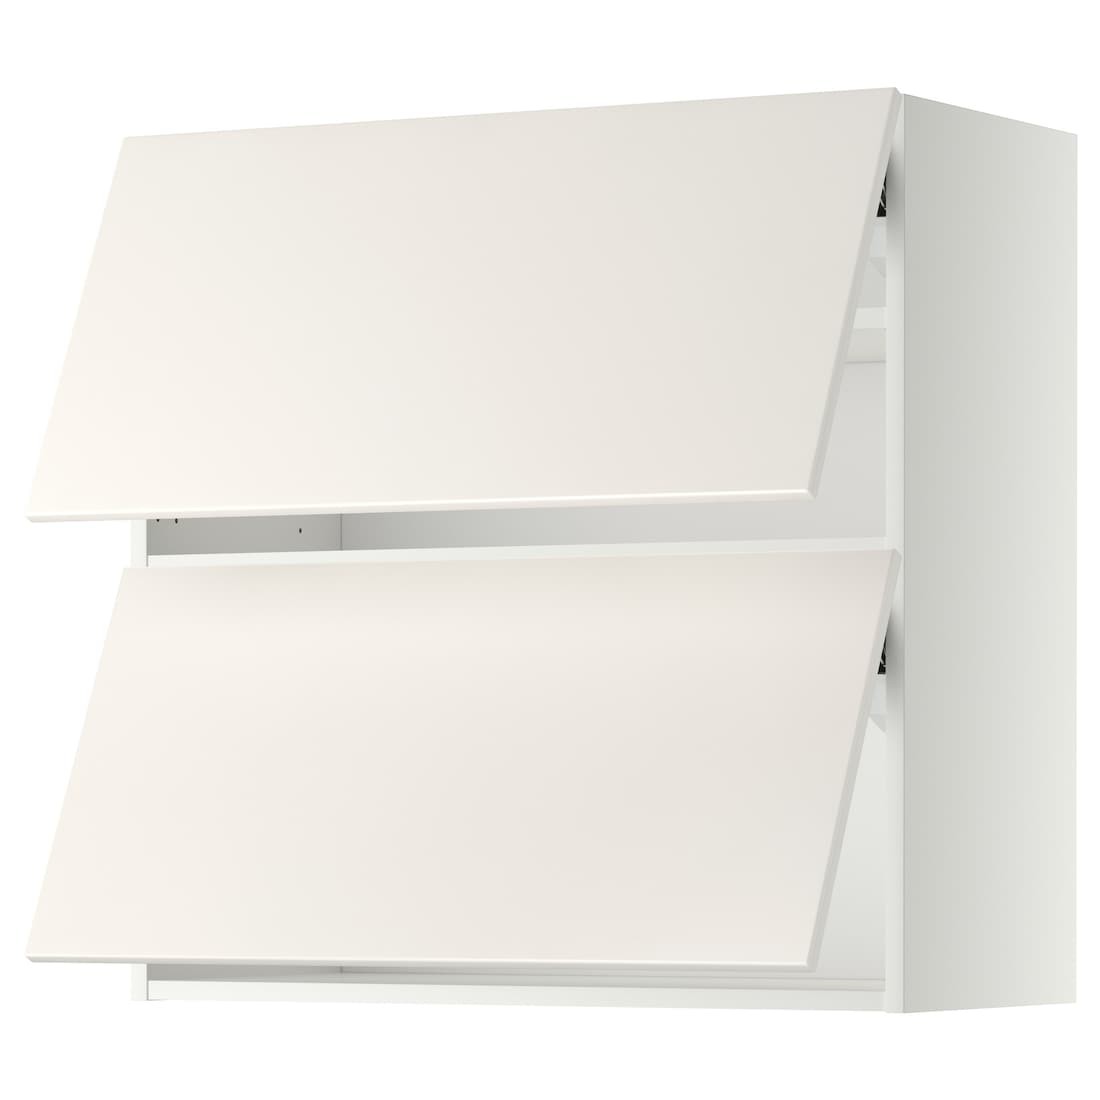 METOD МЕТОД Навесной горизонтальный шкаф / 2 двери, белый / Veddinge белый, 80x80 см